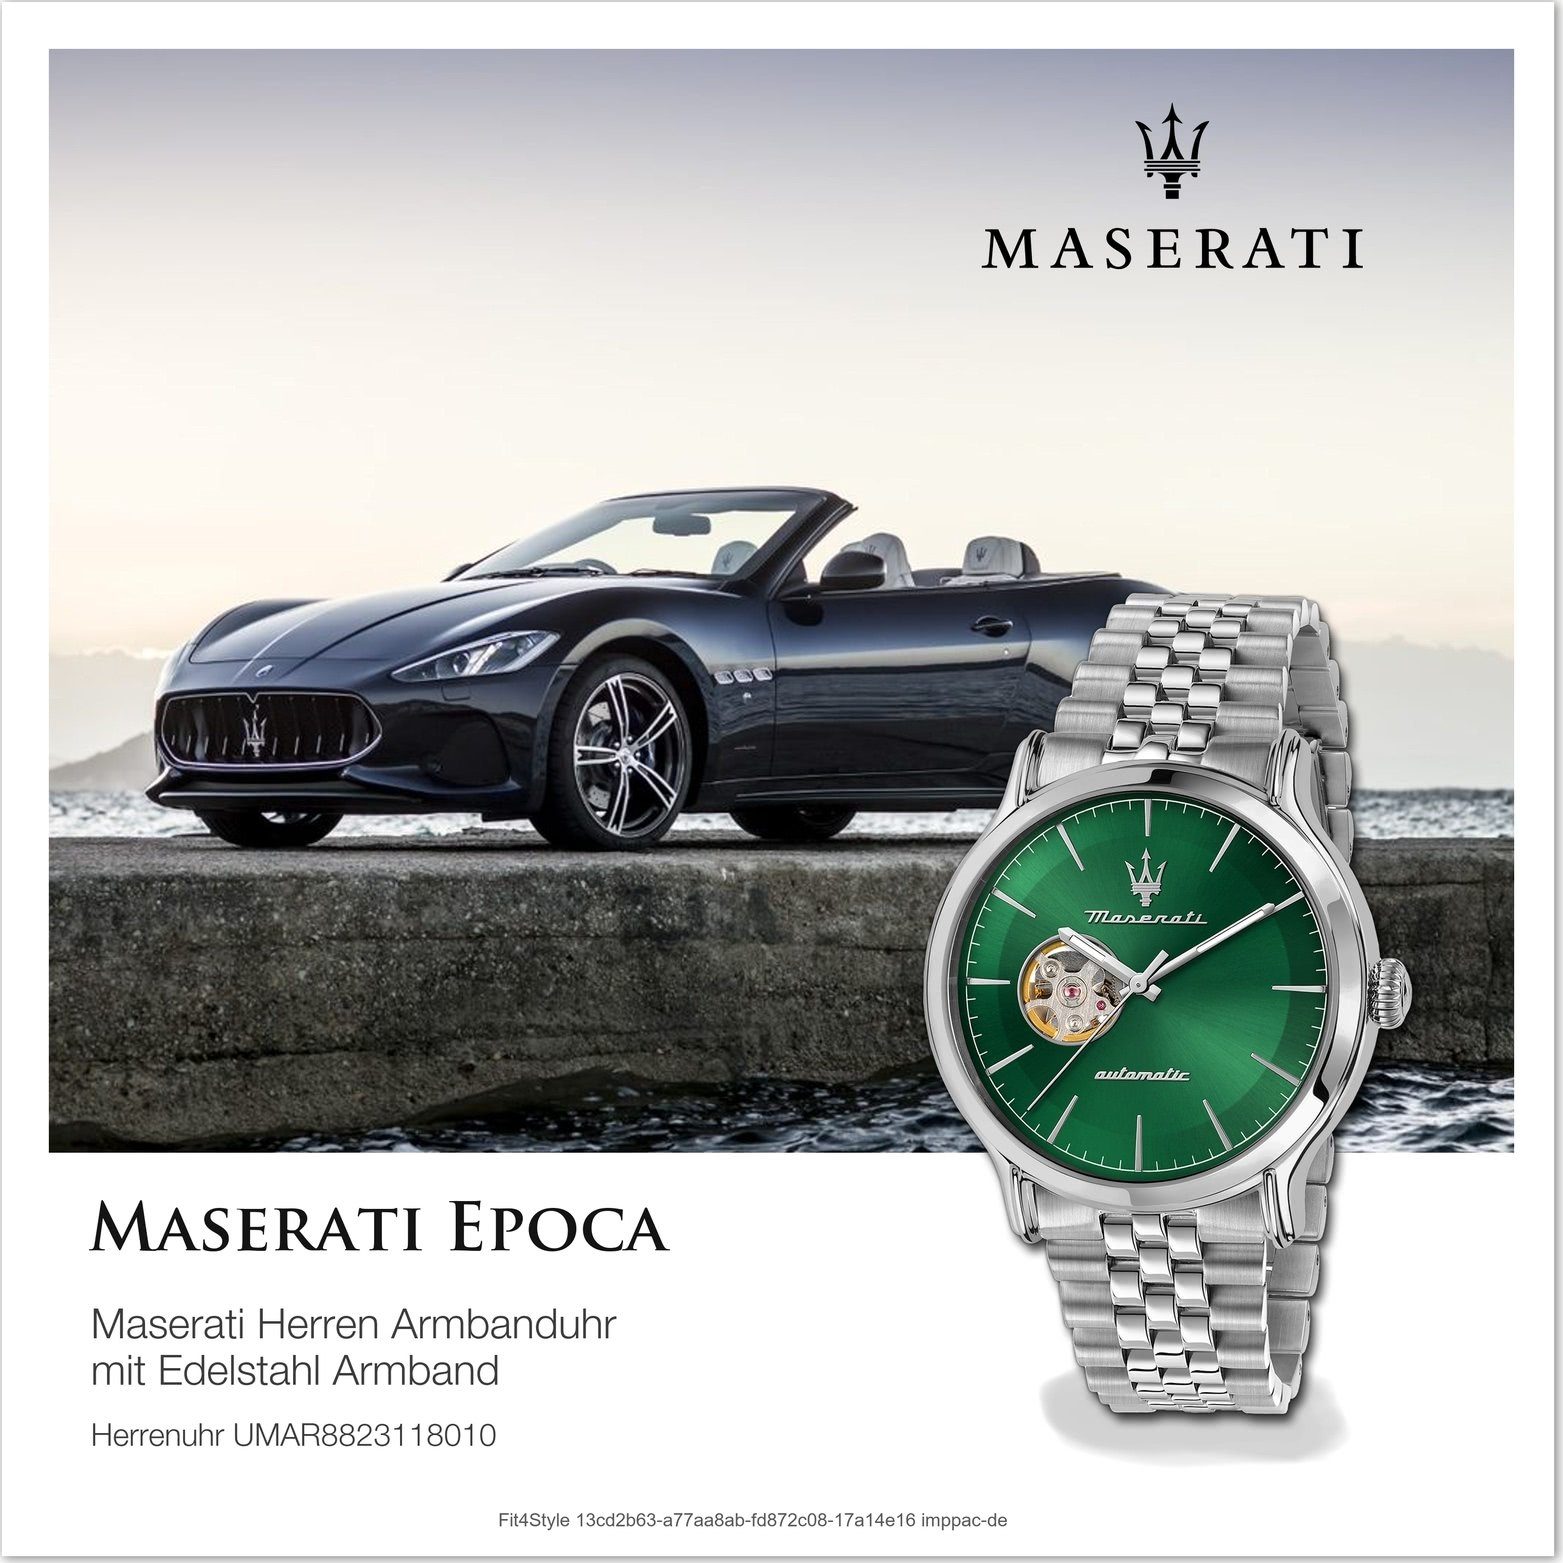 MASERATI Quarzuhr Maserati Herren Epoca, grün Gehäuse, rundes Armbanduhr Herrenuhr grau, (ca. groß 42mm) Edelstahlarmband